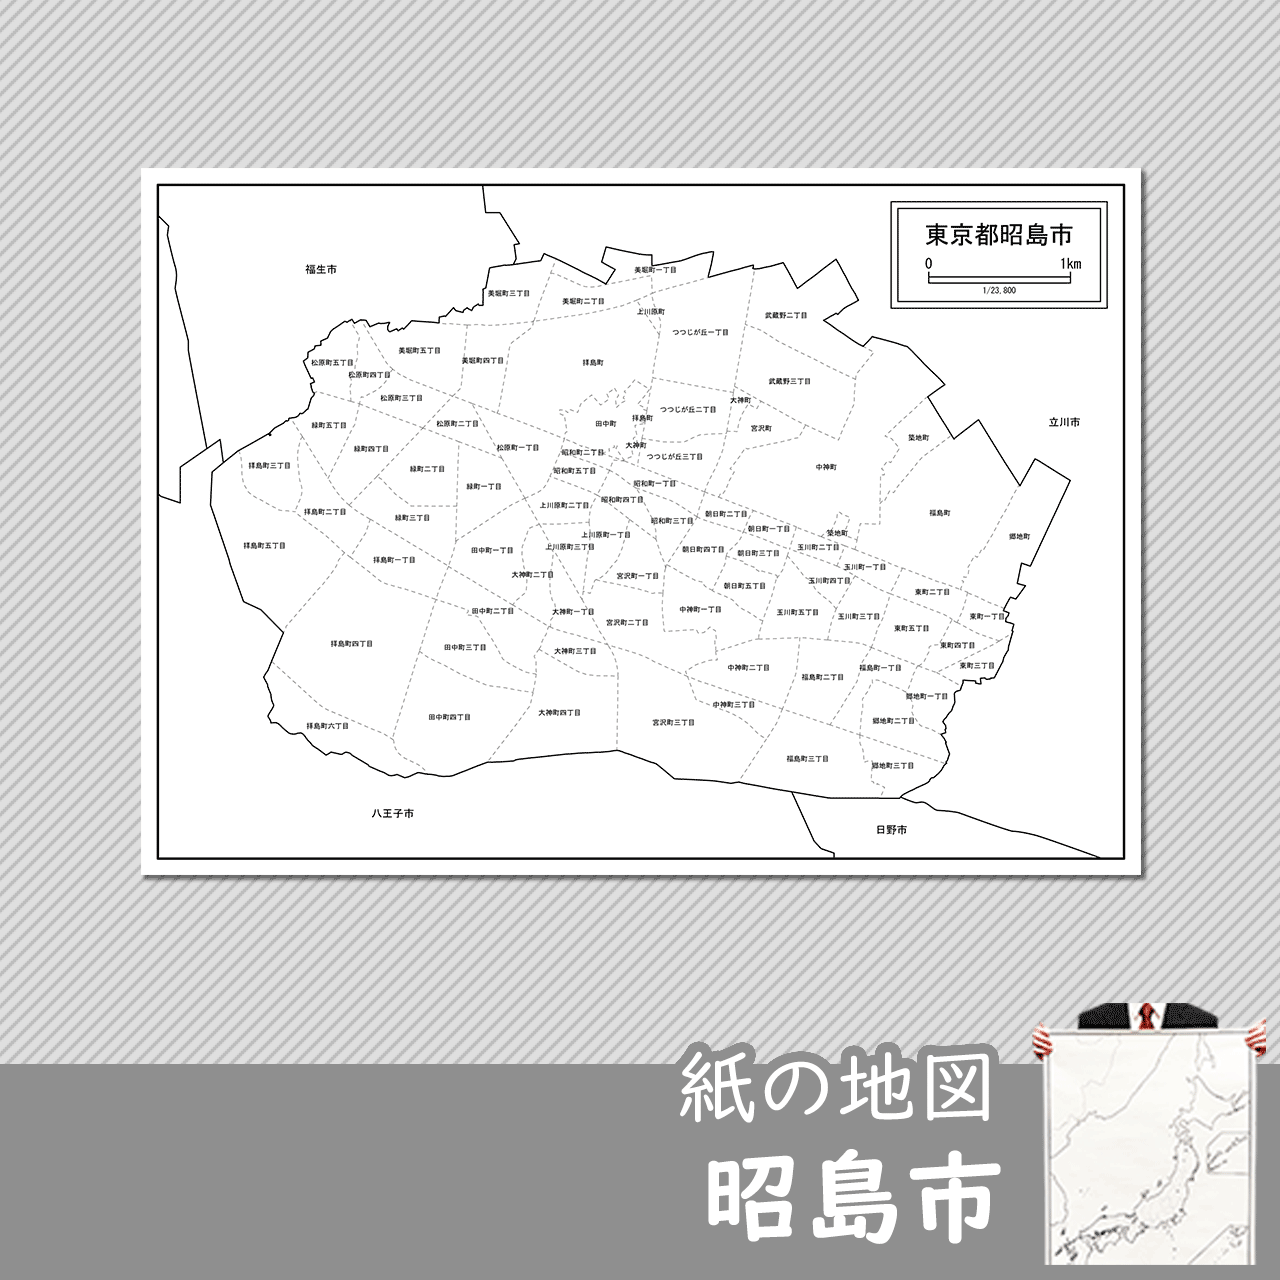 昭島市の紙の白地図のサムネイル